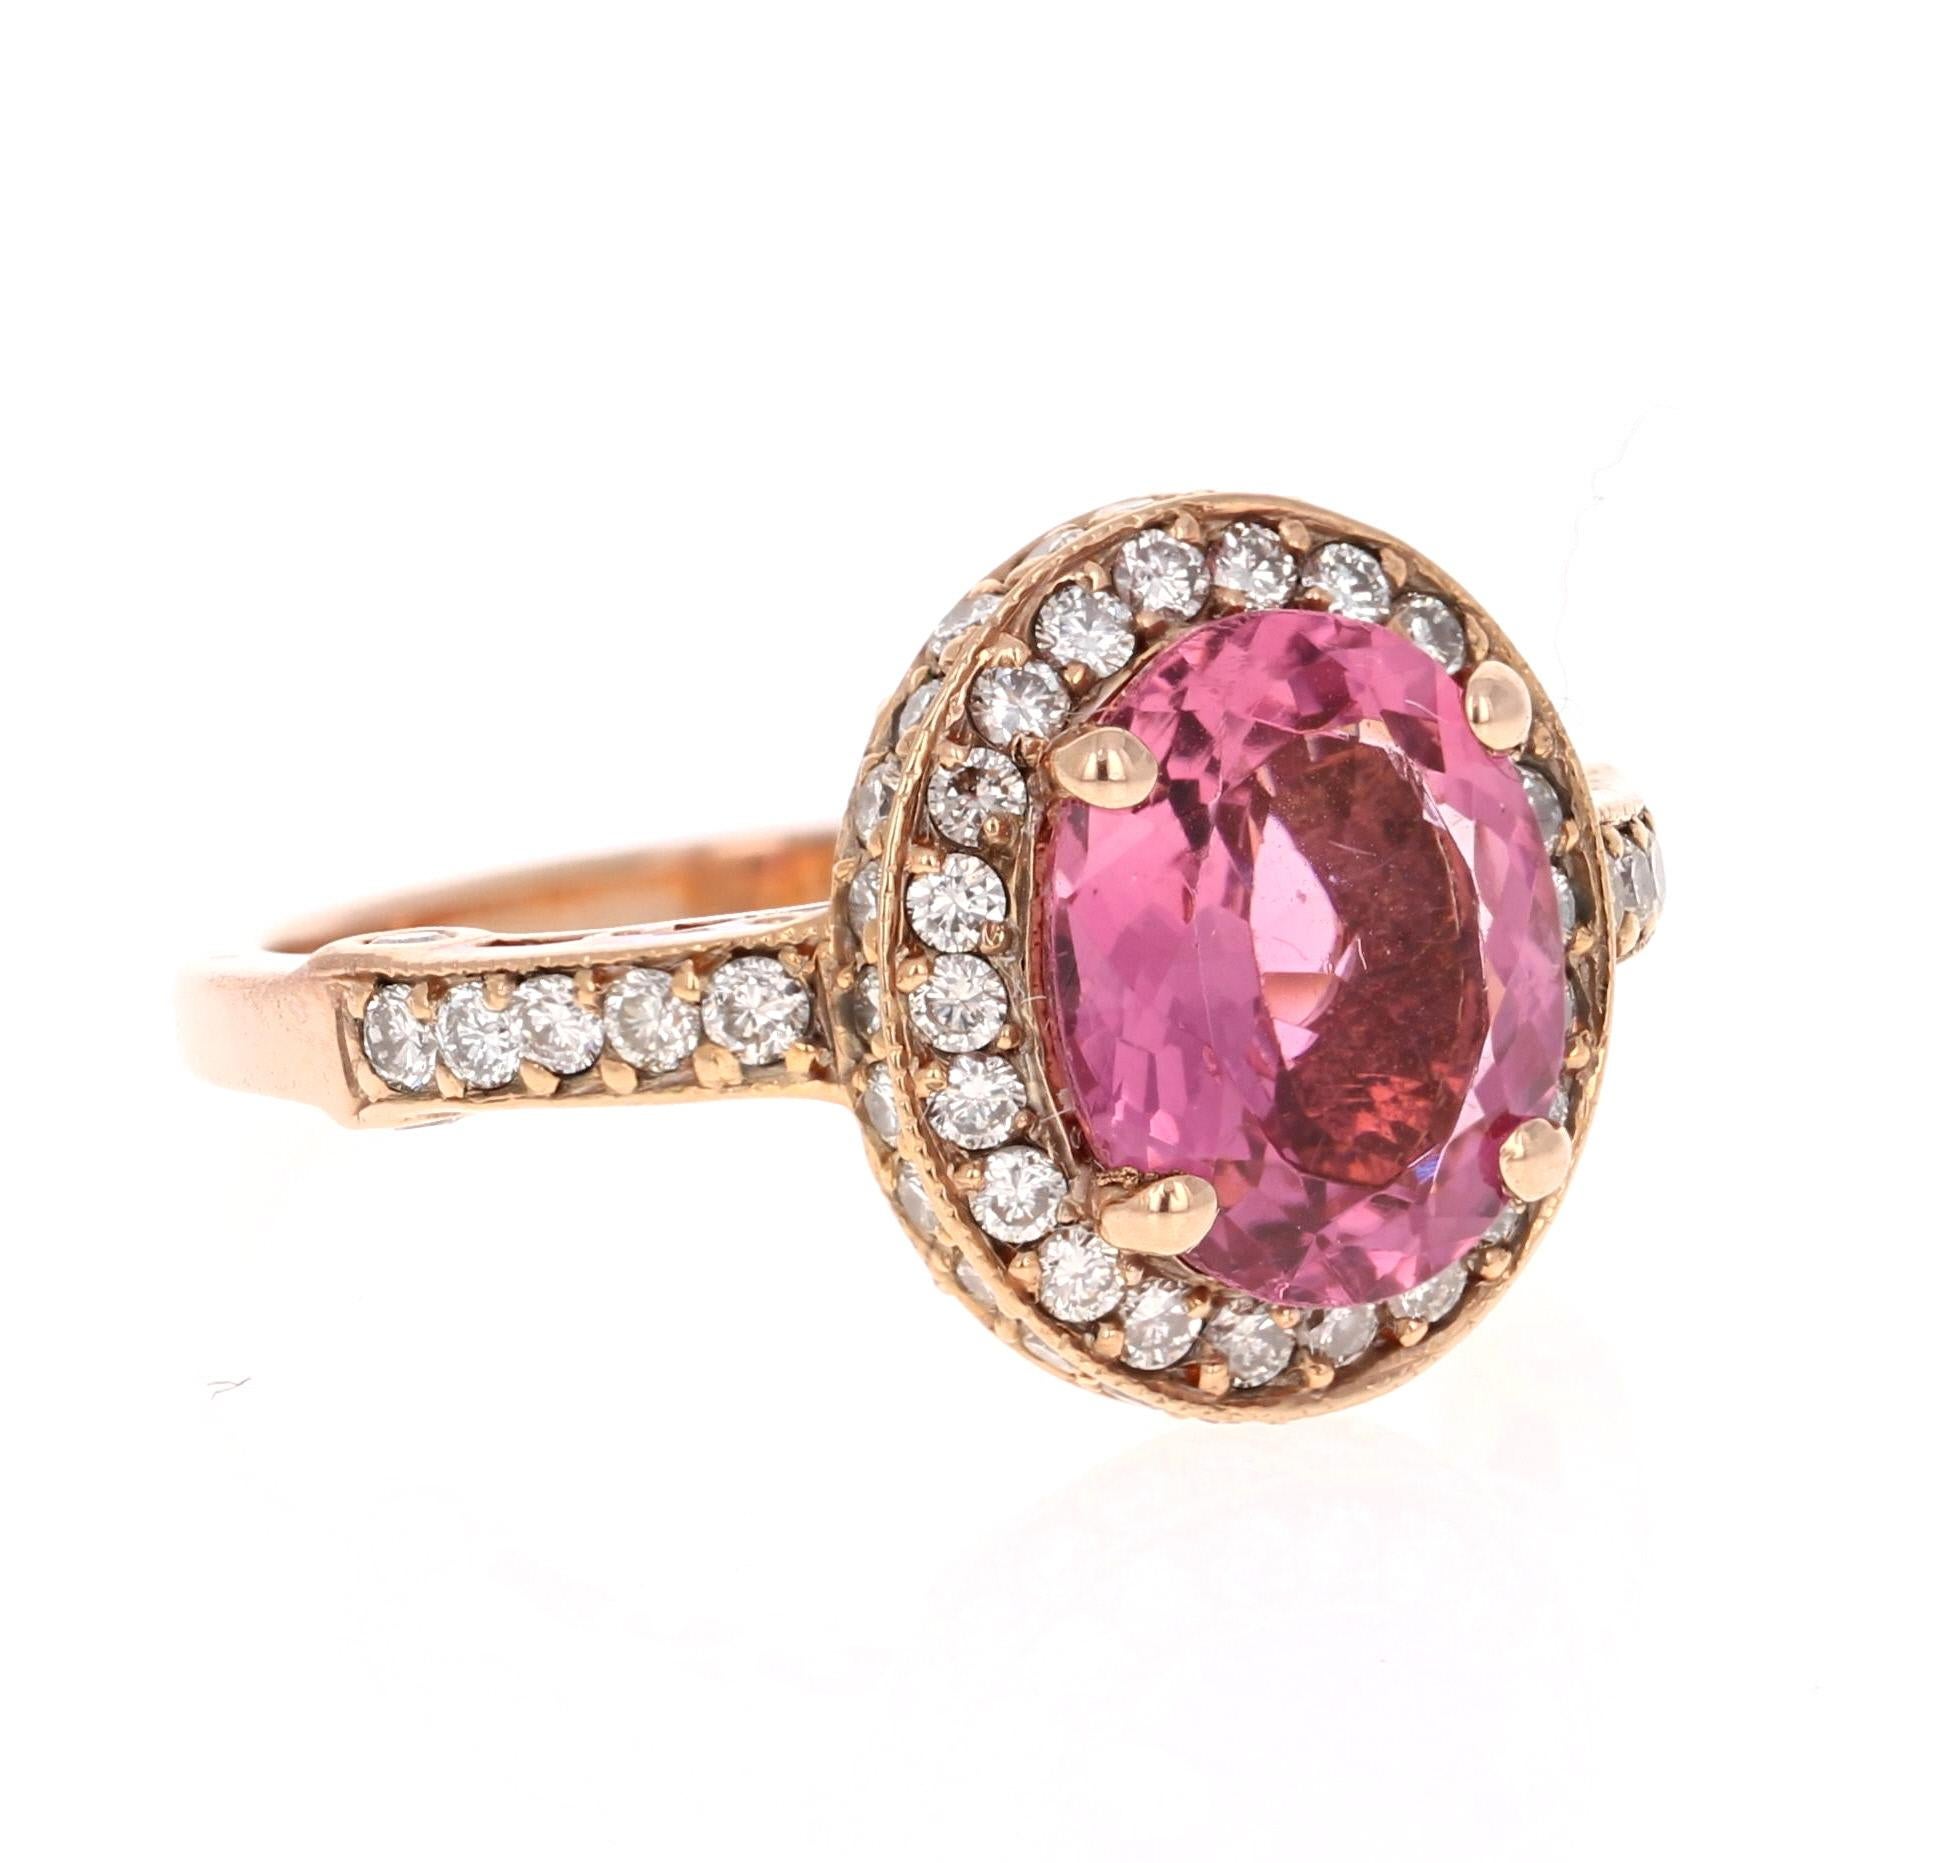 Schöner und strahlender rosa Turmalinring in einer wunderschönen Roségoldfassung.

Dieser Ring hat ein Oval Cut Pink Turmalin, die 2,46 Karat wiegt. Um den Turmalin herum schweben 74 Diamanten im Rundschliff mit einem Gewicht von 0,83 Karat. 
Das